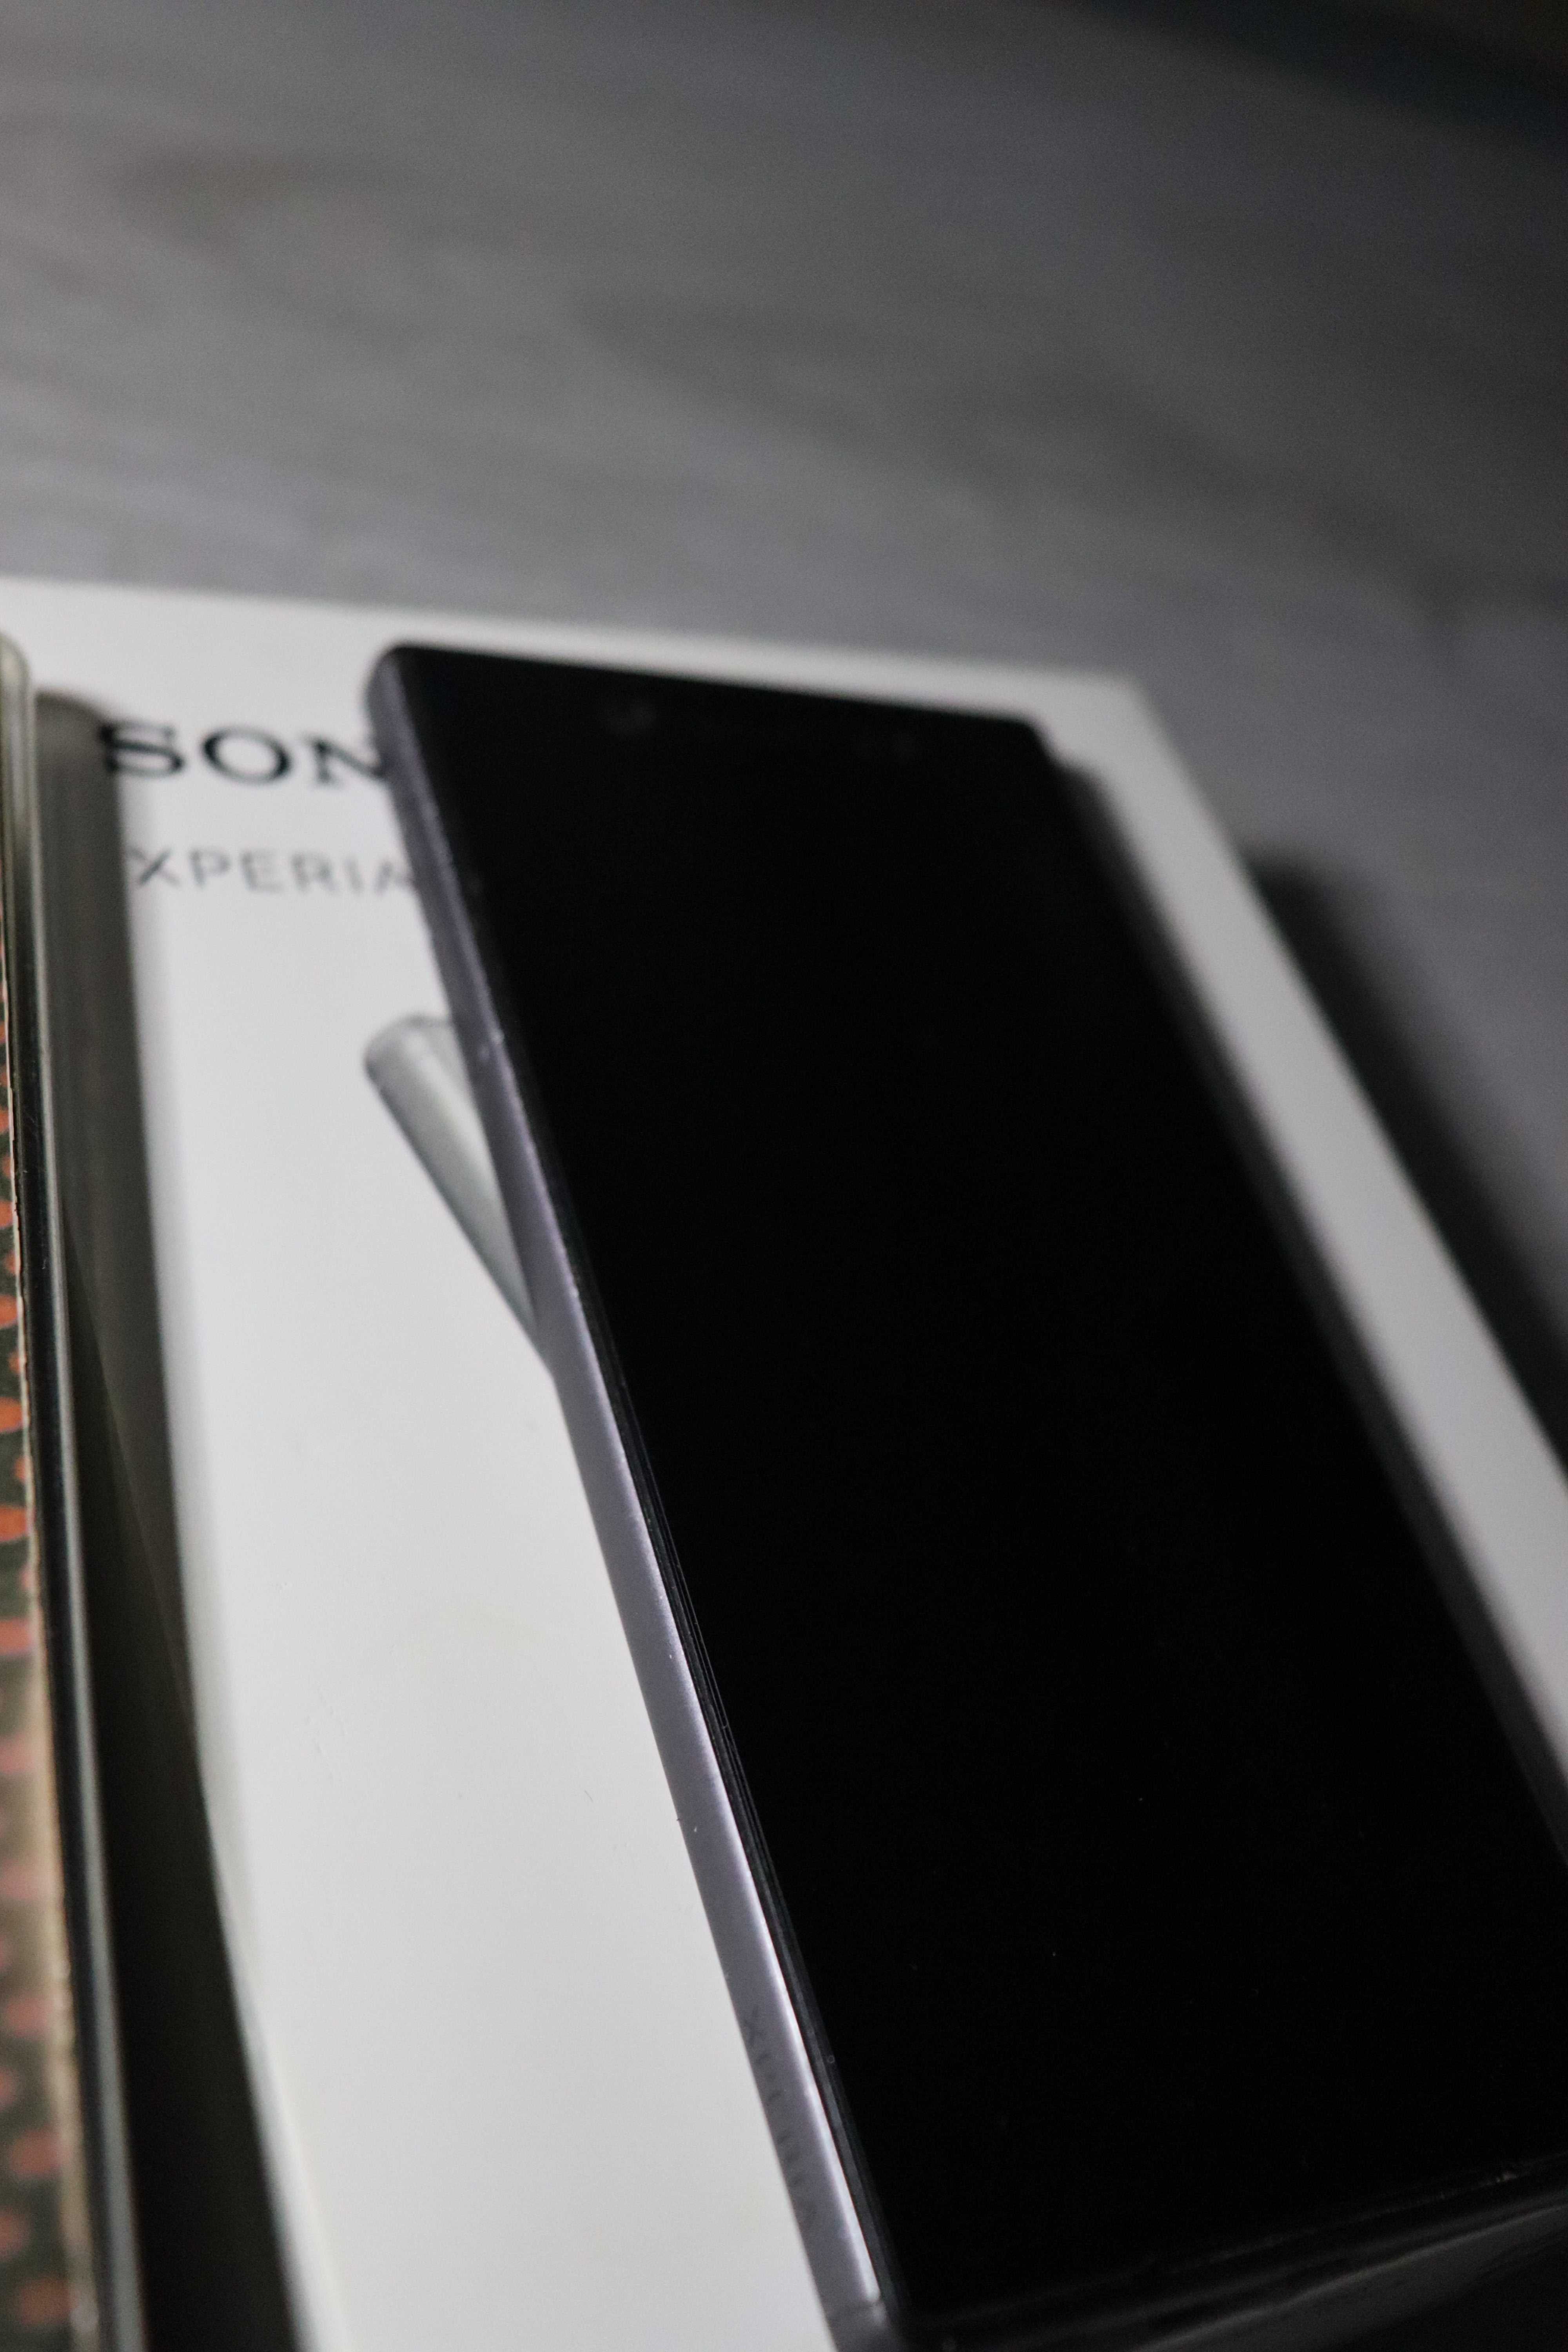 Sony Xperia Z5 Black 3gb/32gb